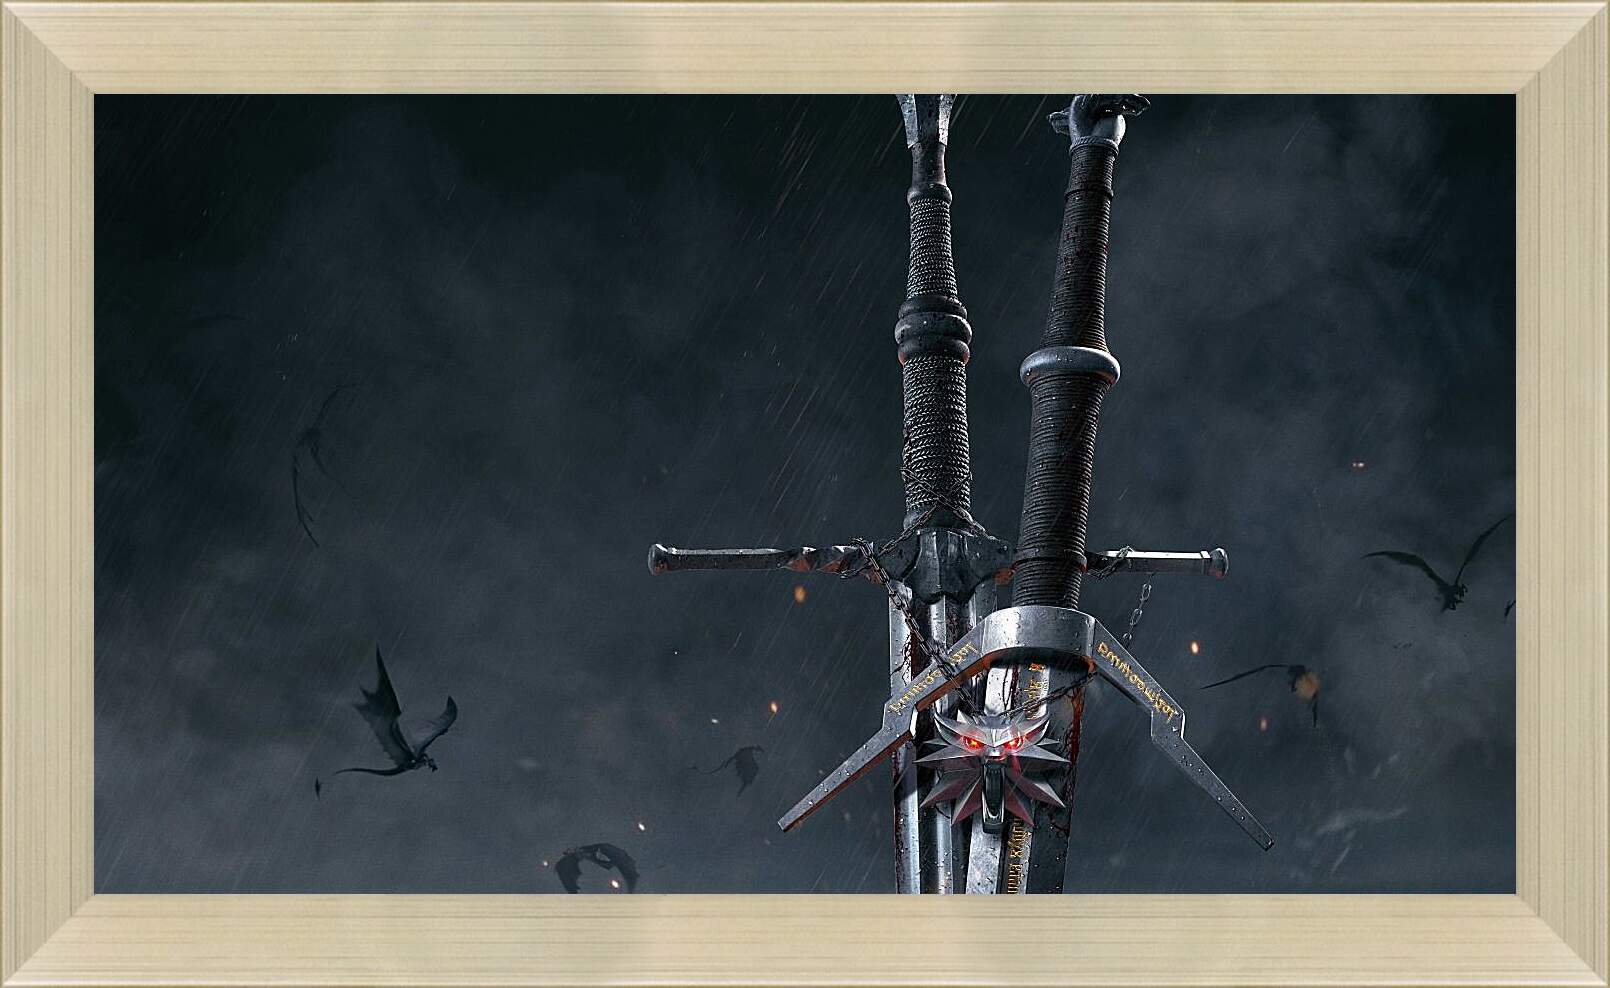 Картина в раме - The Witcher (Ведьмак), стальной и серебряный мечи Геральта